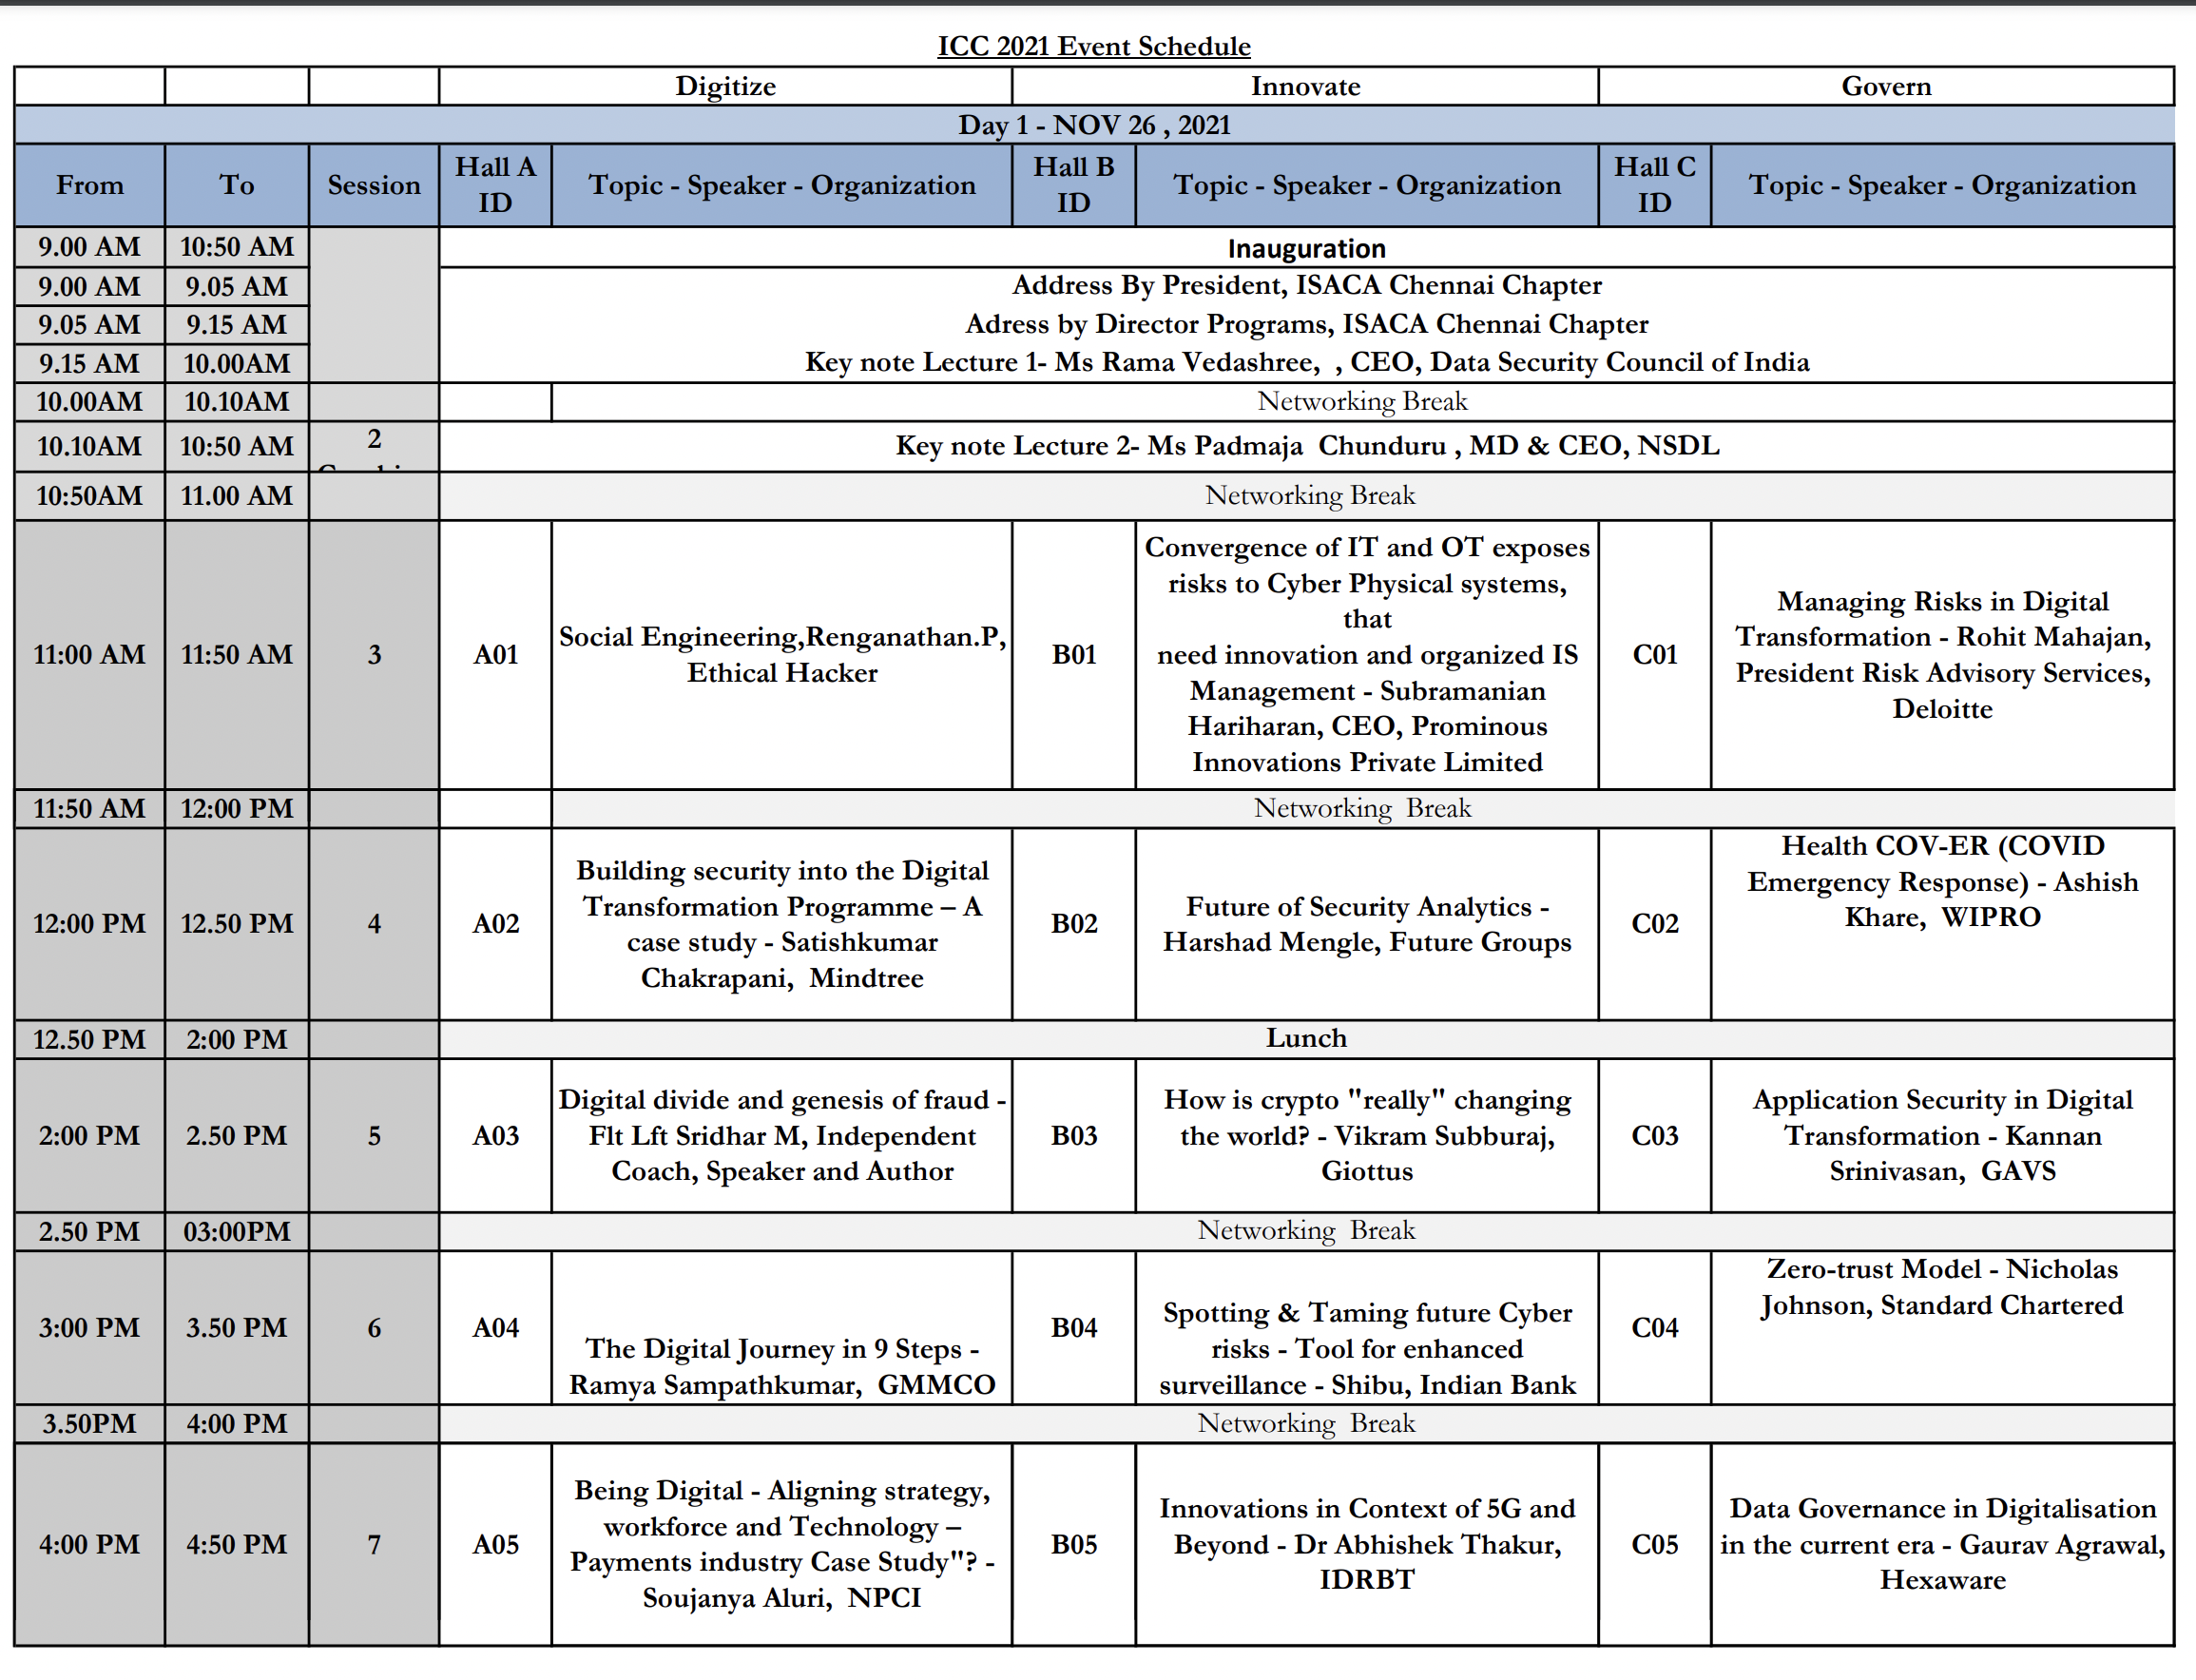 ICC 2021 Program Schedule – ISACA Chennai Chapter